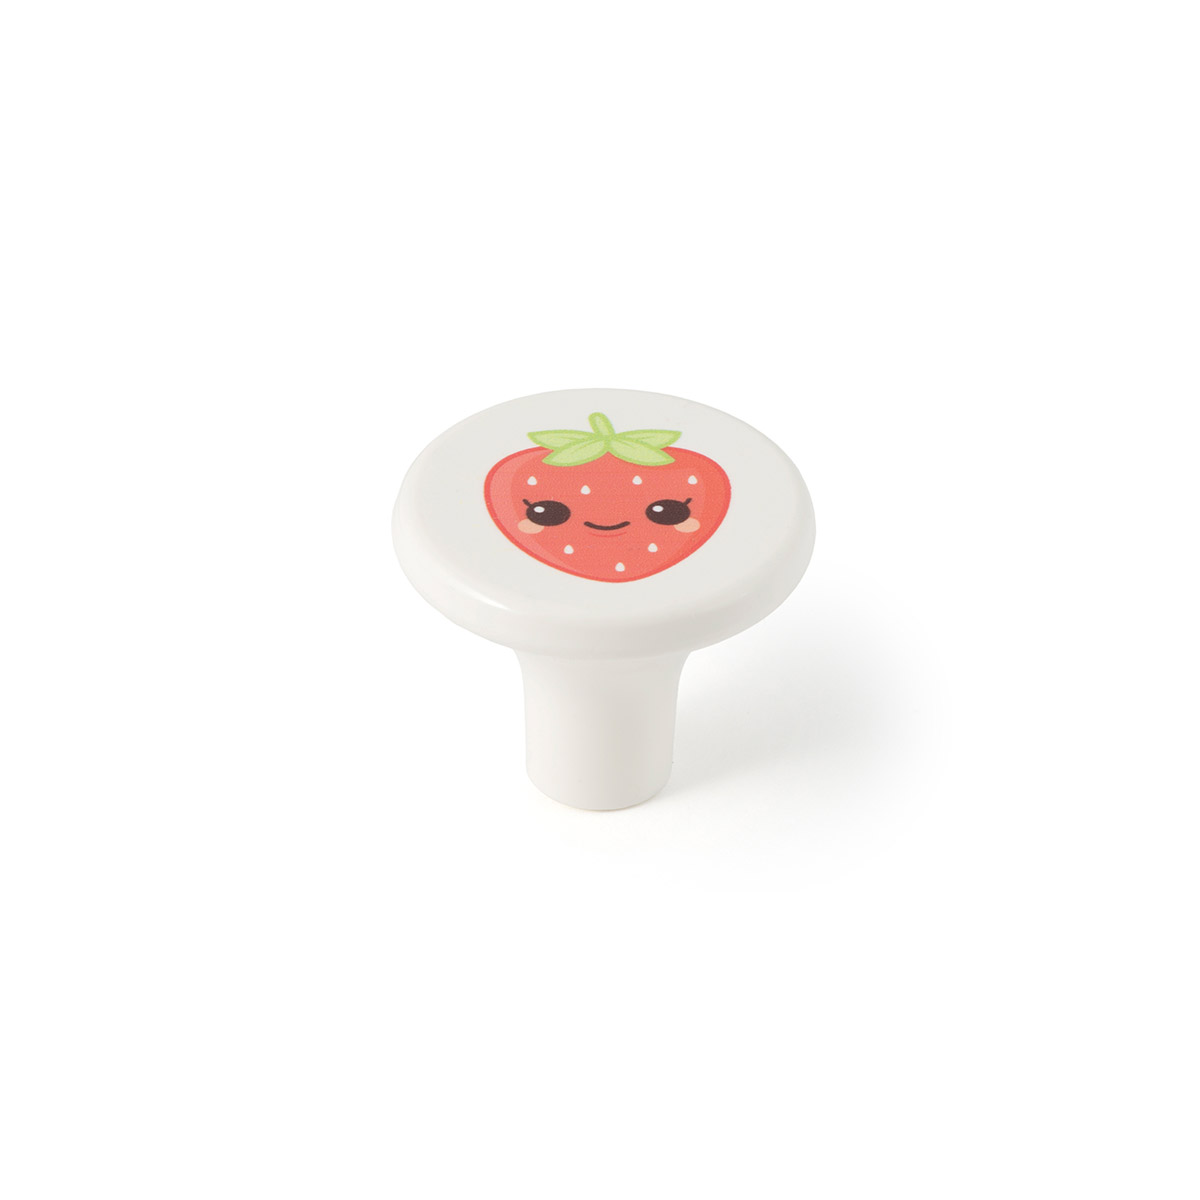 Blister avec 6 boutons en plastique finition fraise, dimensions: 33x33x27mm ø: 33mm